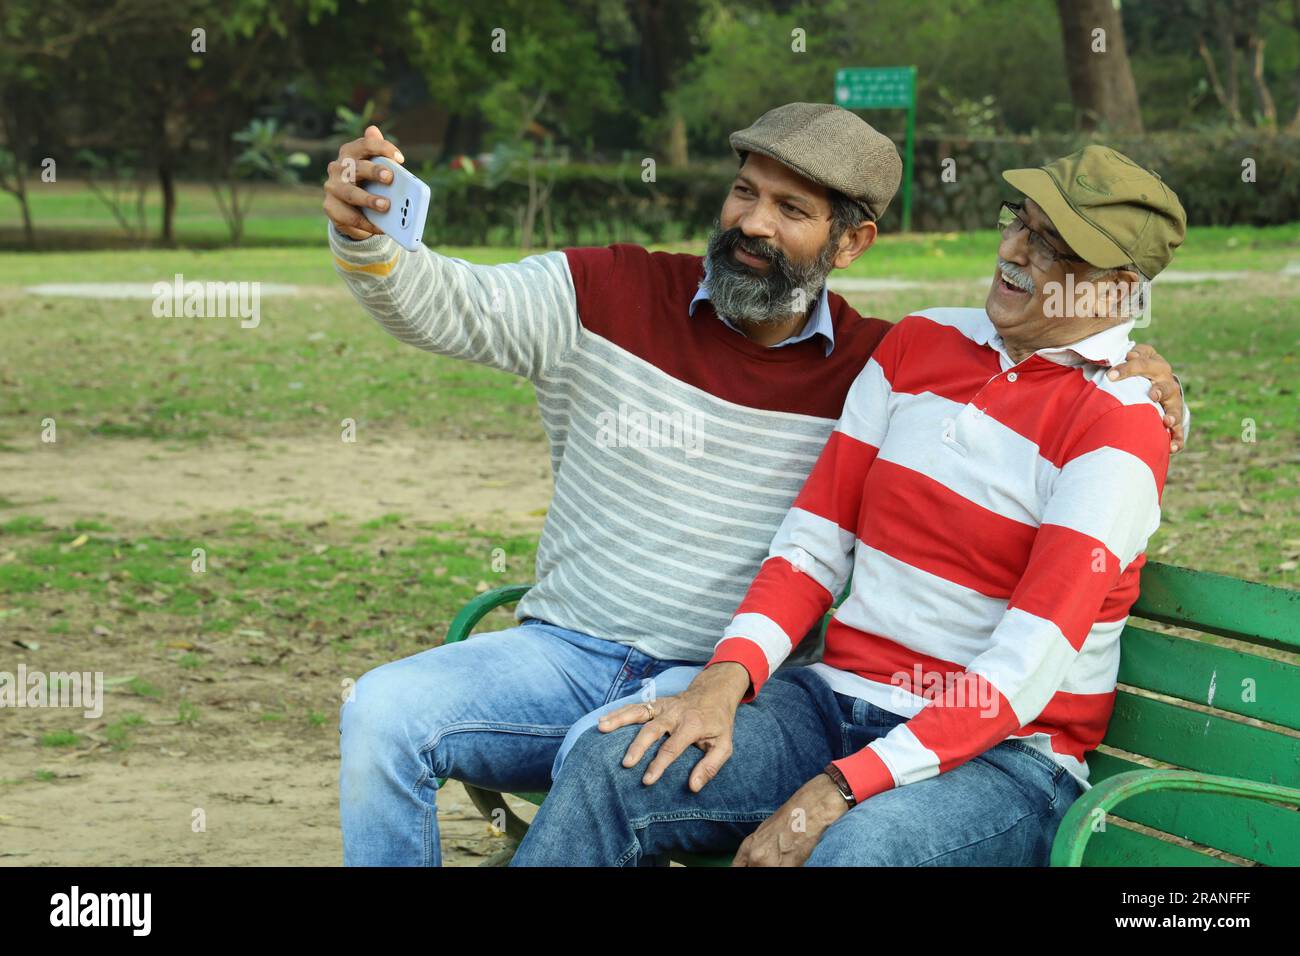 Vieux père et fils d'âge moyen assis sur un banc de parc tenant le téléphone portable en main. Appel vidéo et prise de selfie. Ils sont dans des verts luxuriants et la sérénité. Banque D'Images